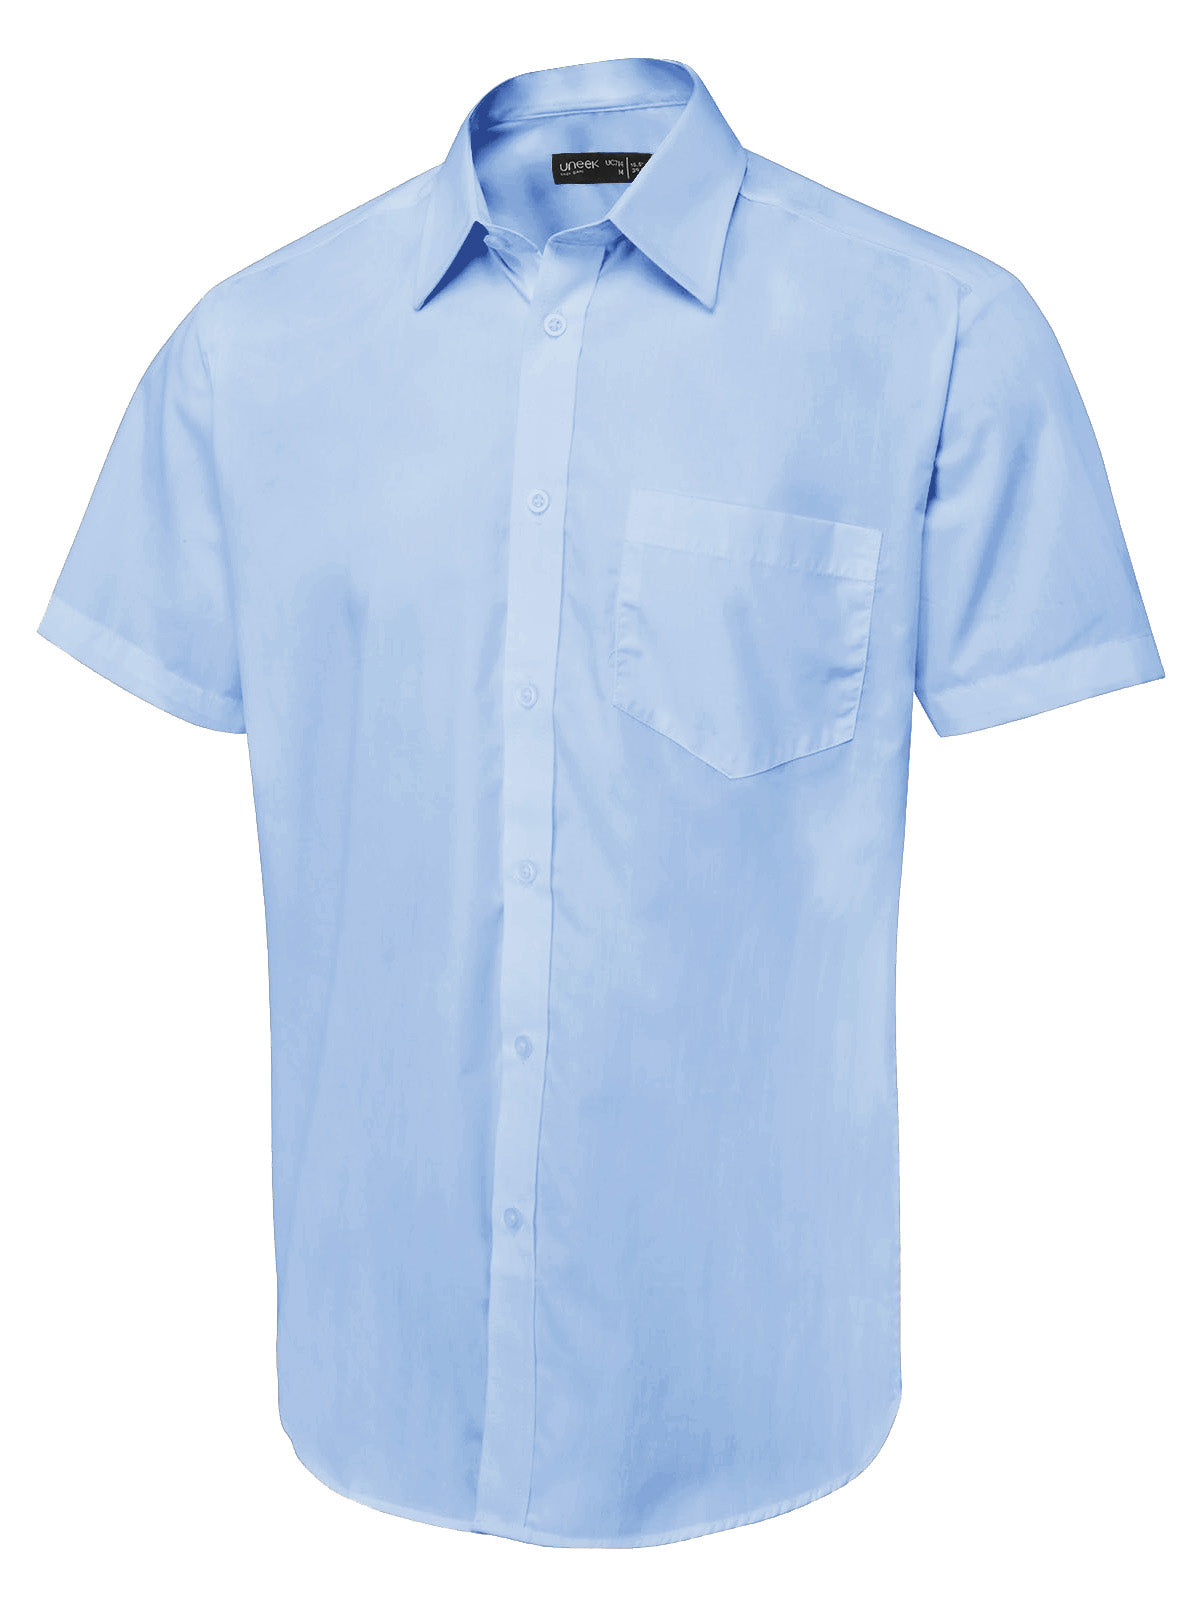 mens_short_sleeve_poplin_shirt_light_blue